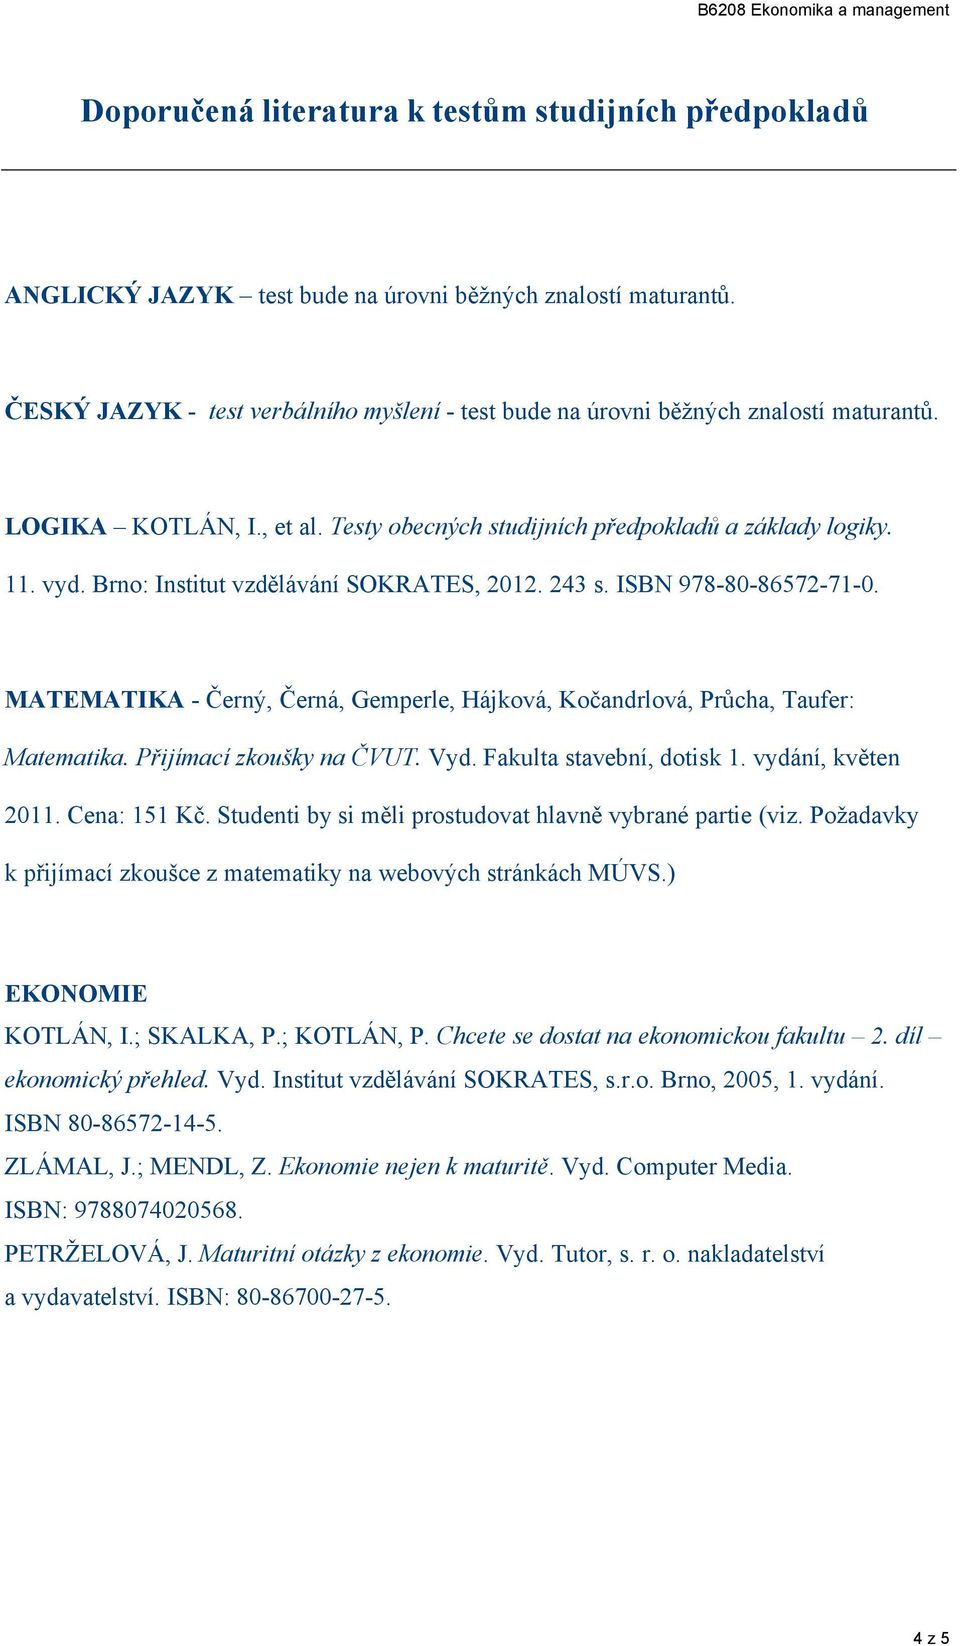 43. ISBN 978-80-8657-71-0. MATEMATIKA - Čerý, Čerá, Gemperle, Hájková, Kočadrlová, Průcha, Taufer: Matematika. Přijímací zkoušky a ČVUT. Vyd. Fakulta tavebí, dotik 1. vydáí, květe 011. Cea: 151 Kč.